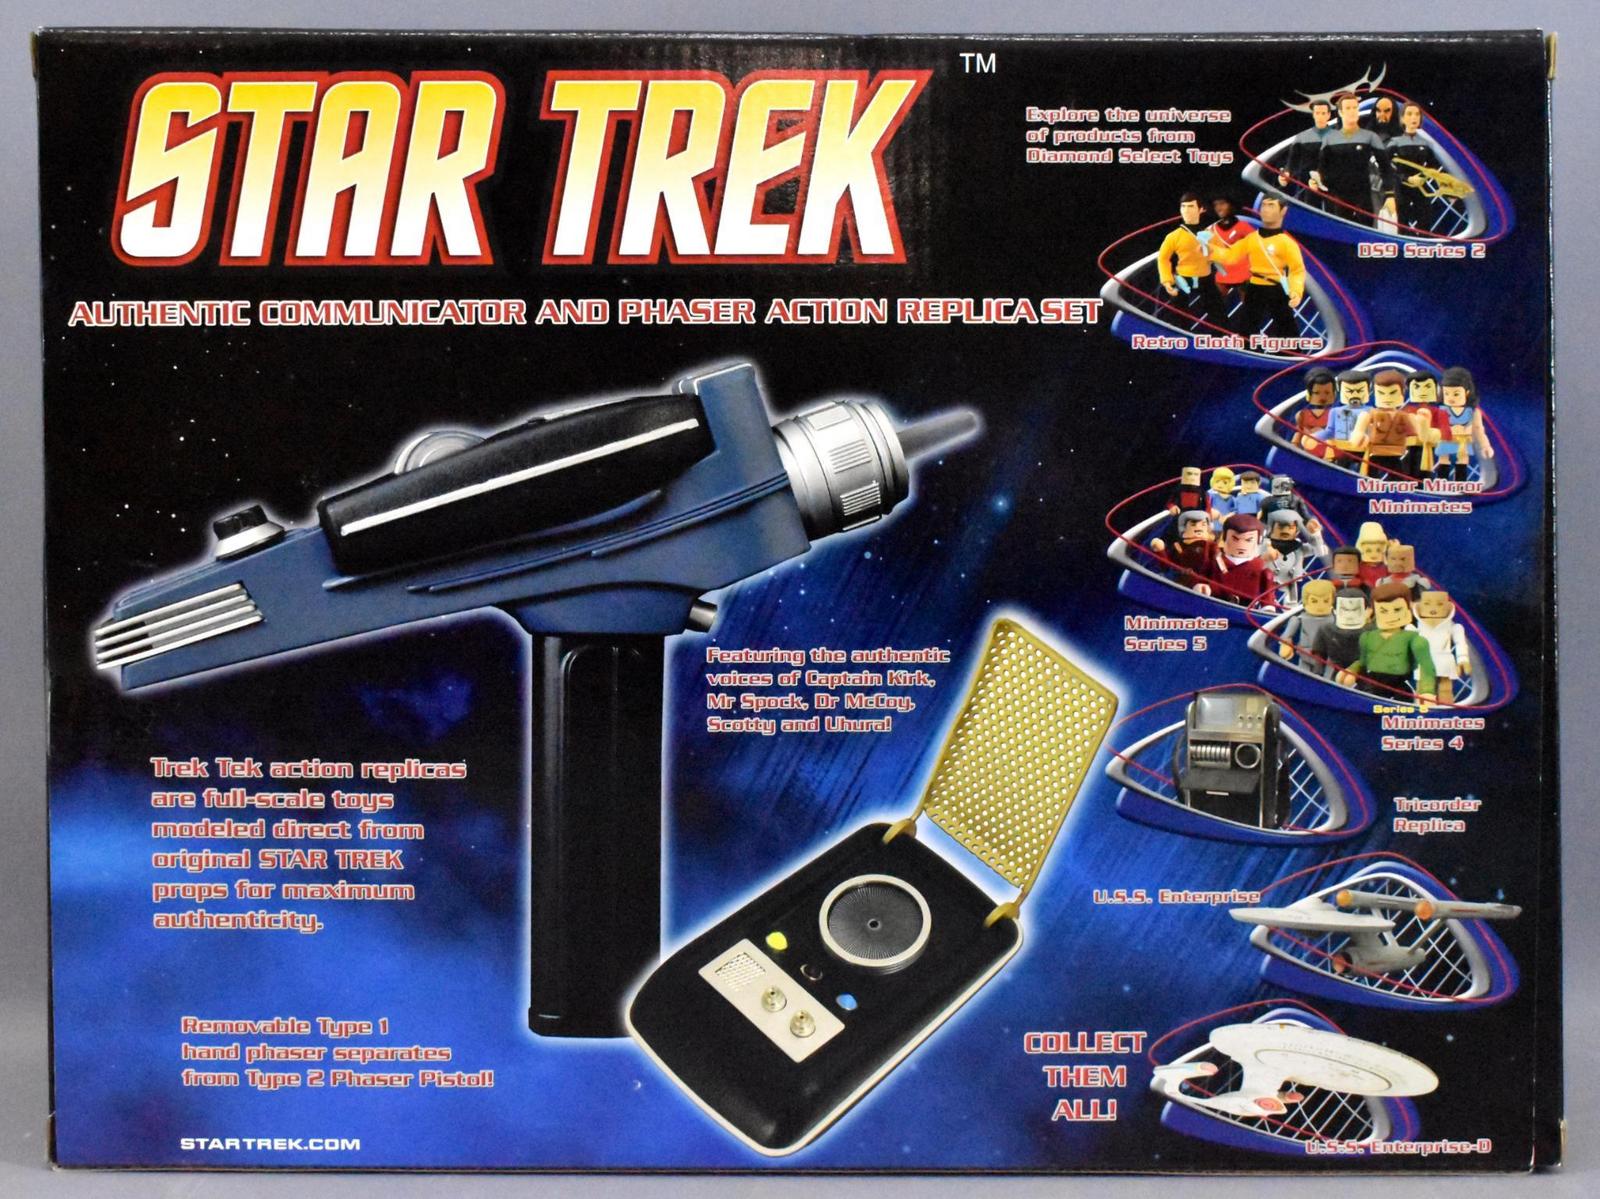 Diamond Select Toys Star Trek phaser pistol and communicator set in  original box